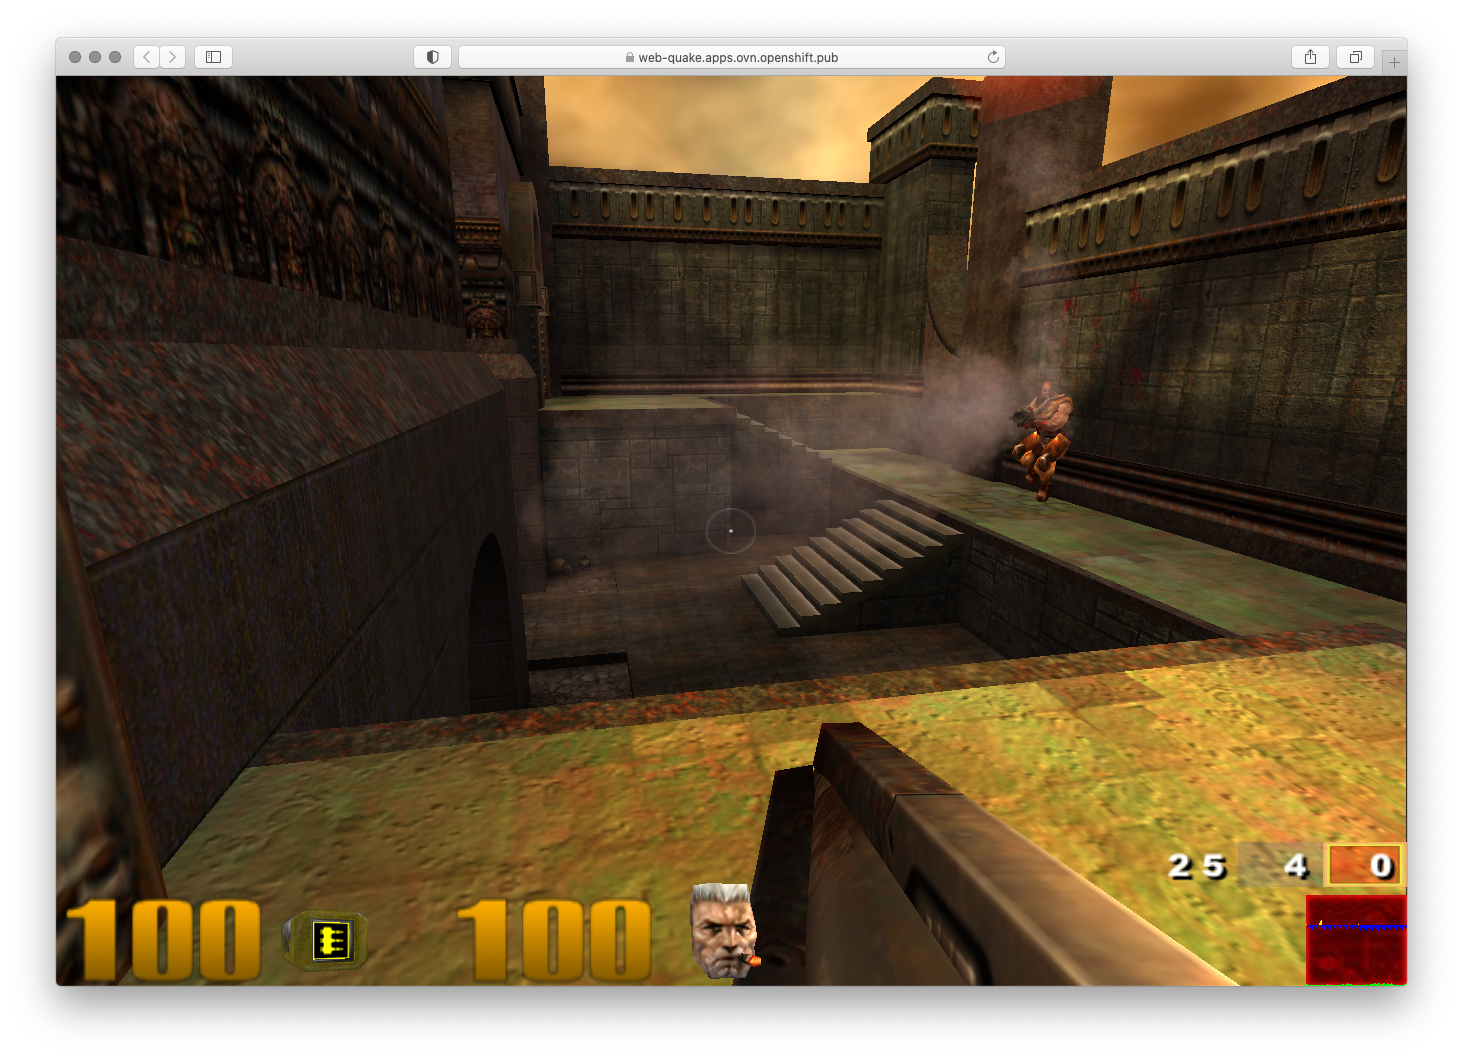 Quake 3 on OpenShift